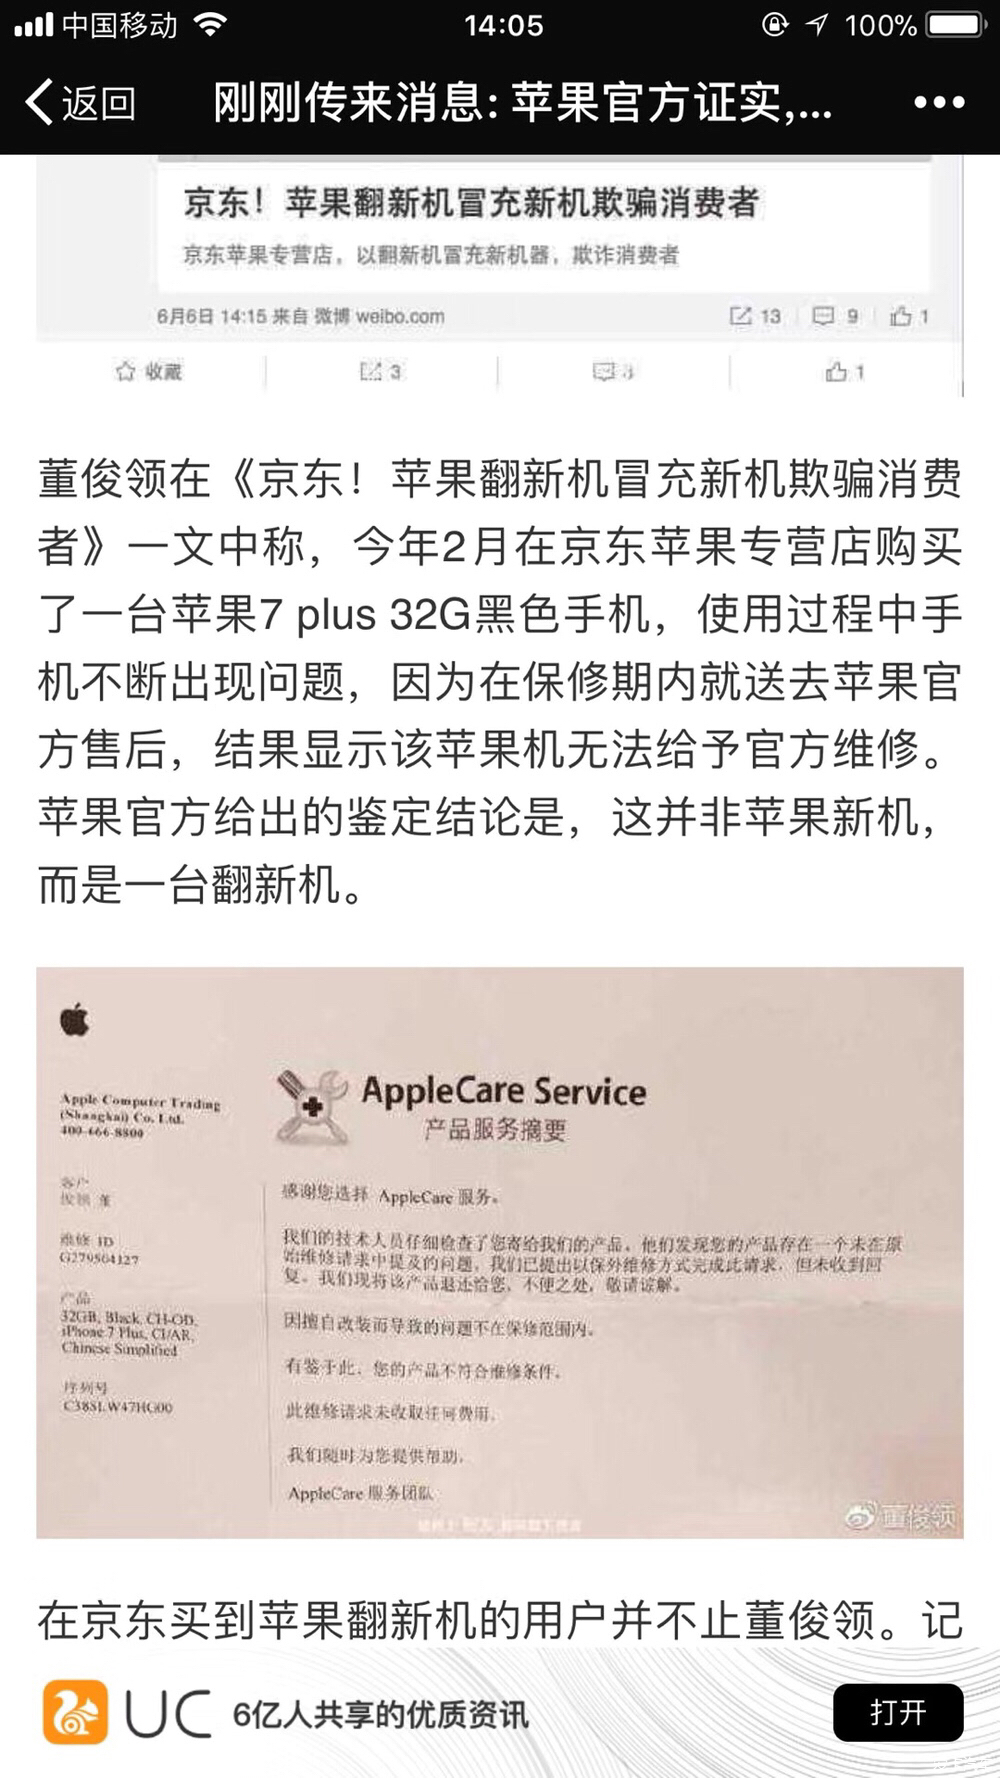 苹果官方证实,京东所售苹果手机全是假货!(有图